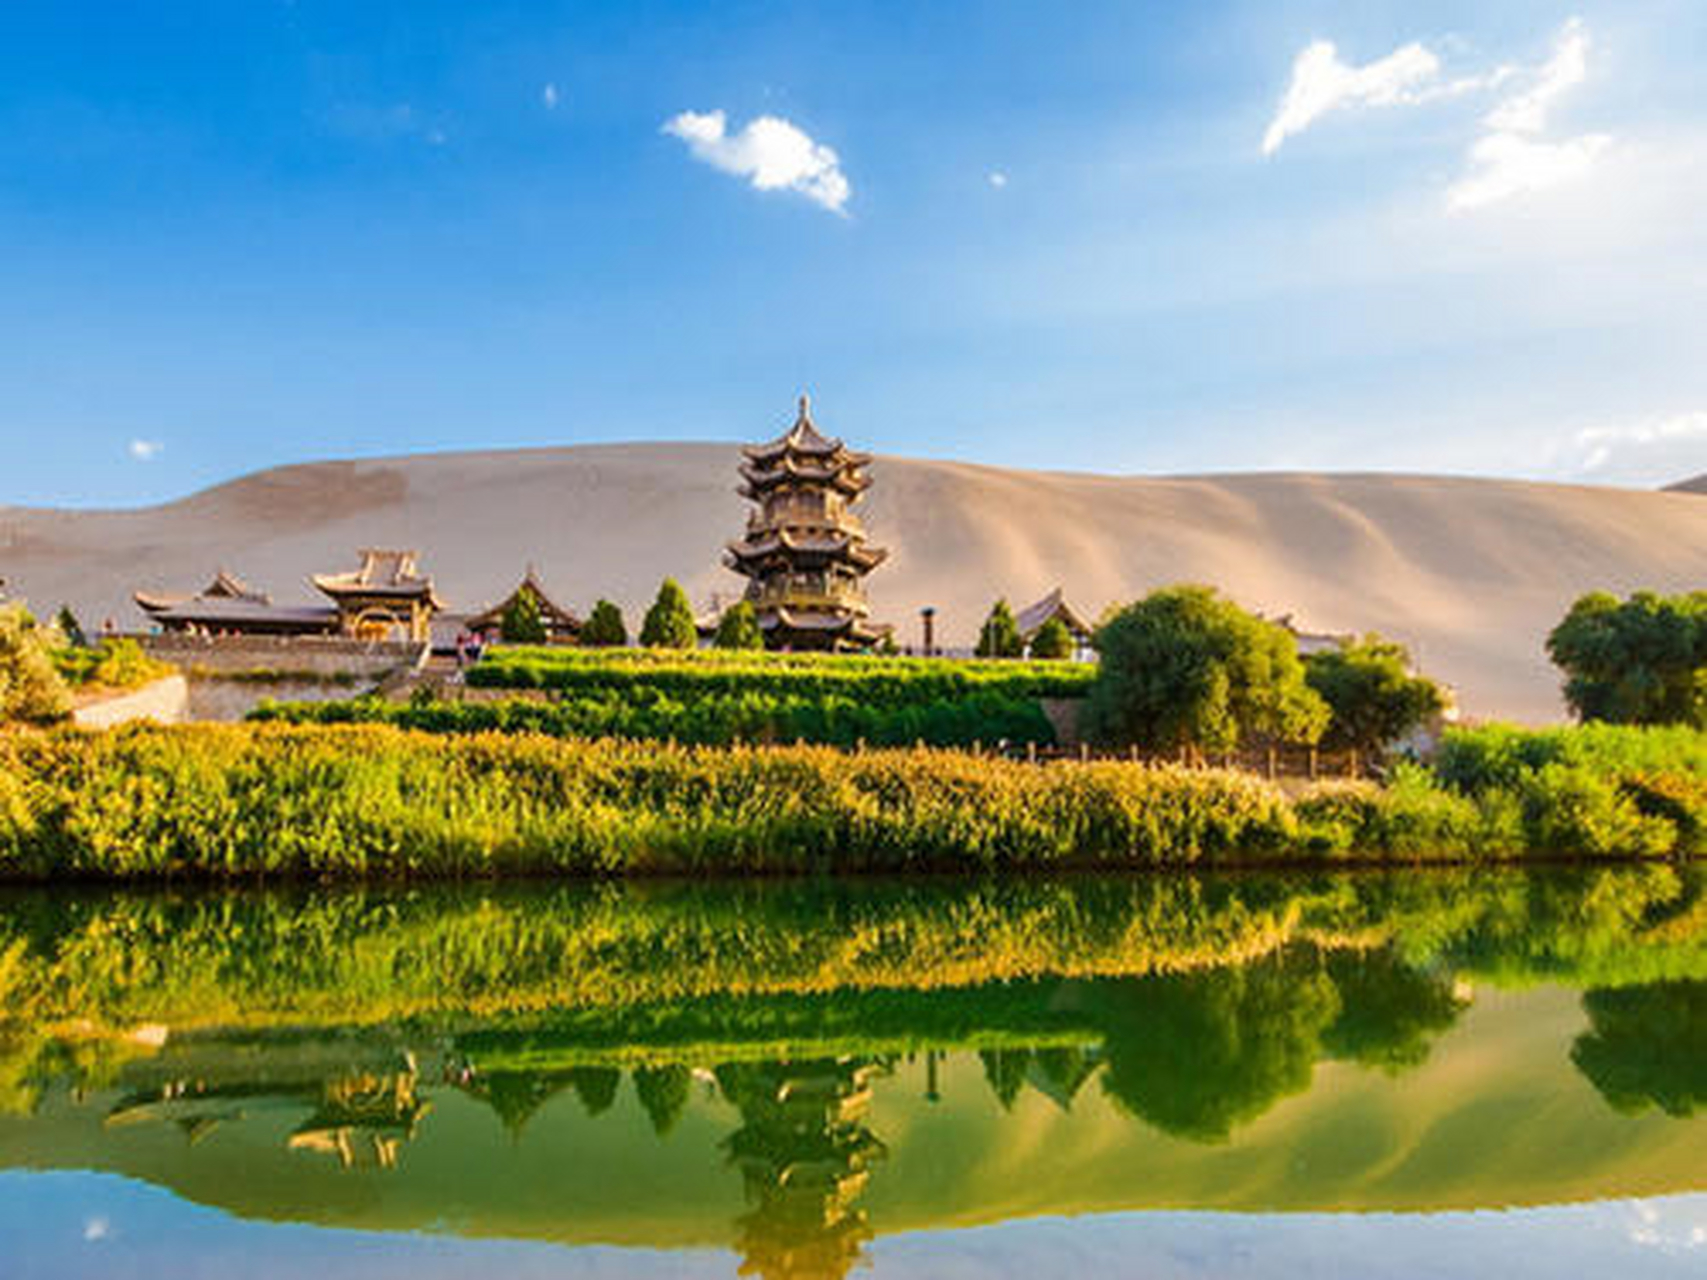 鸣沙山月牙泉风景名胜区位于甘肃省敦煌市城南5公里处,月牙泉处于